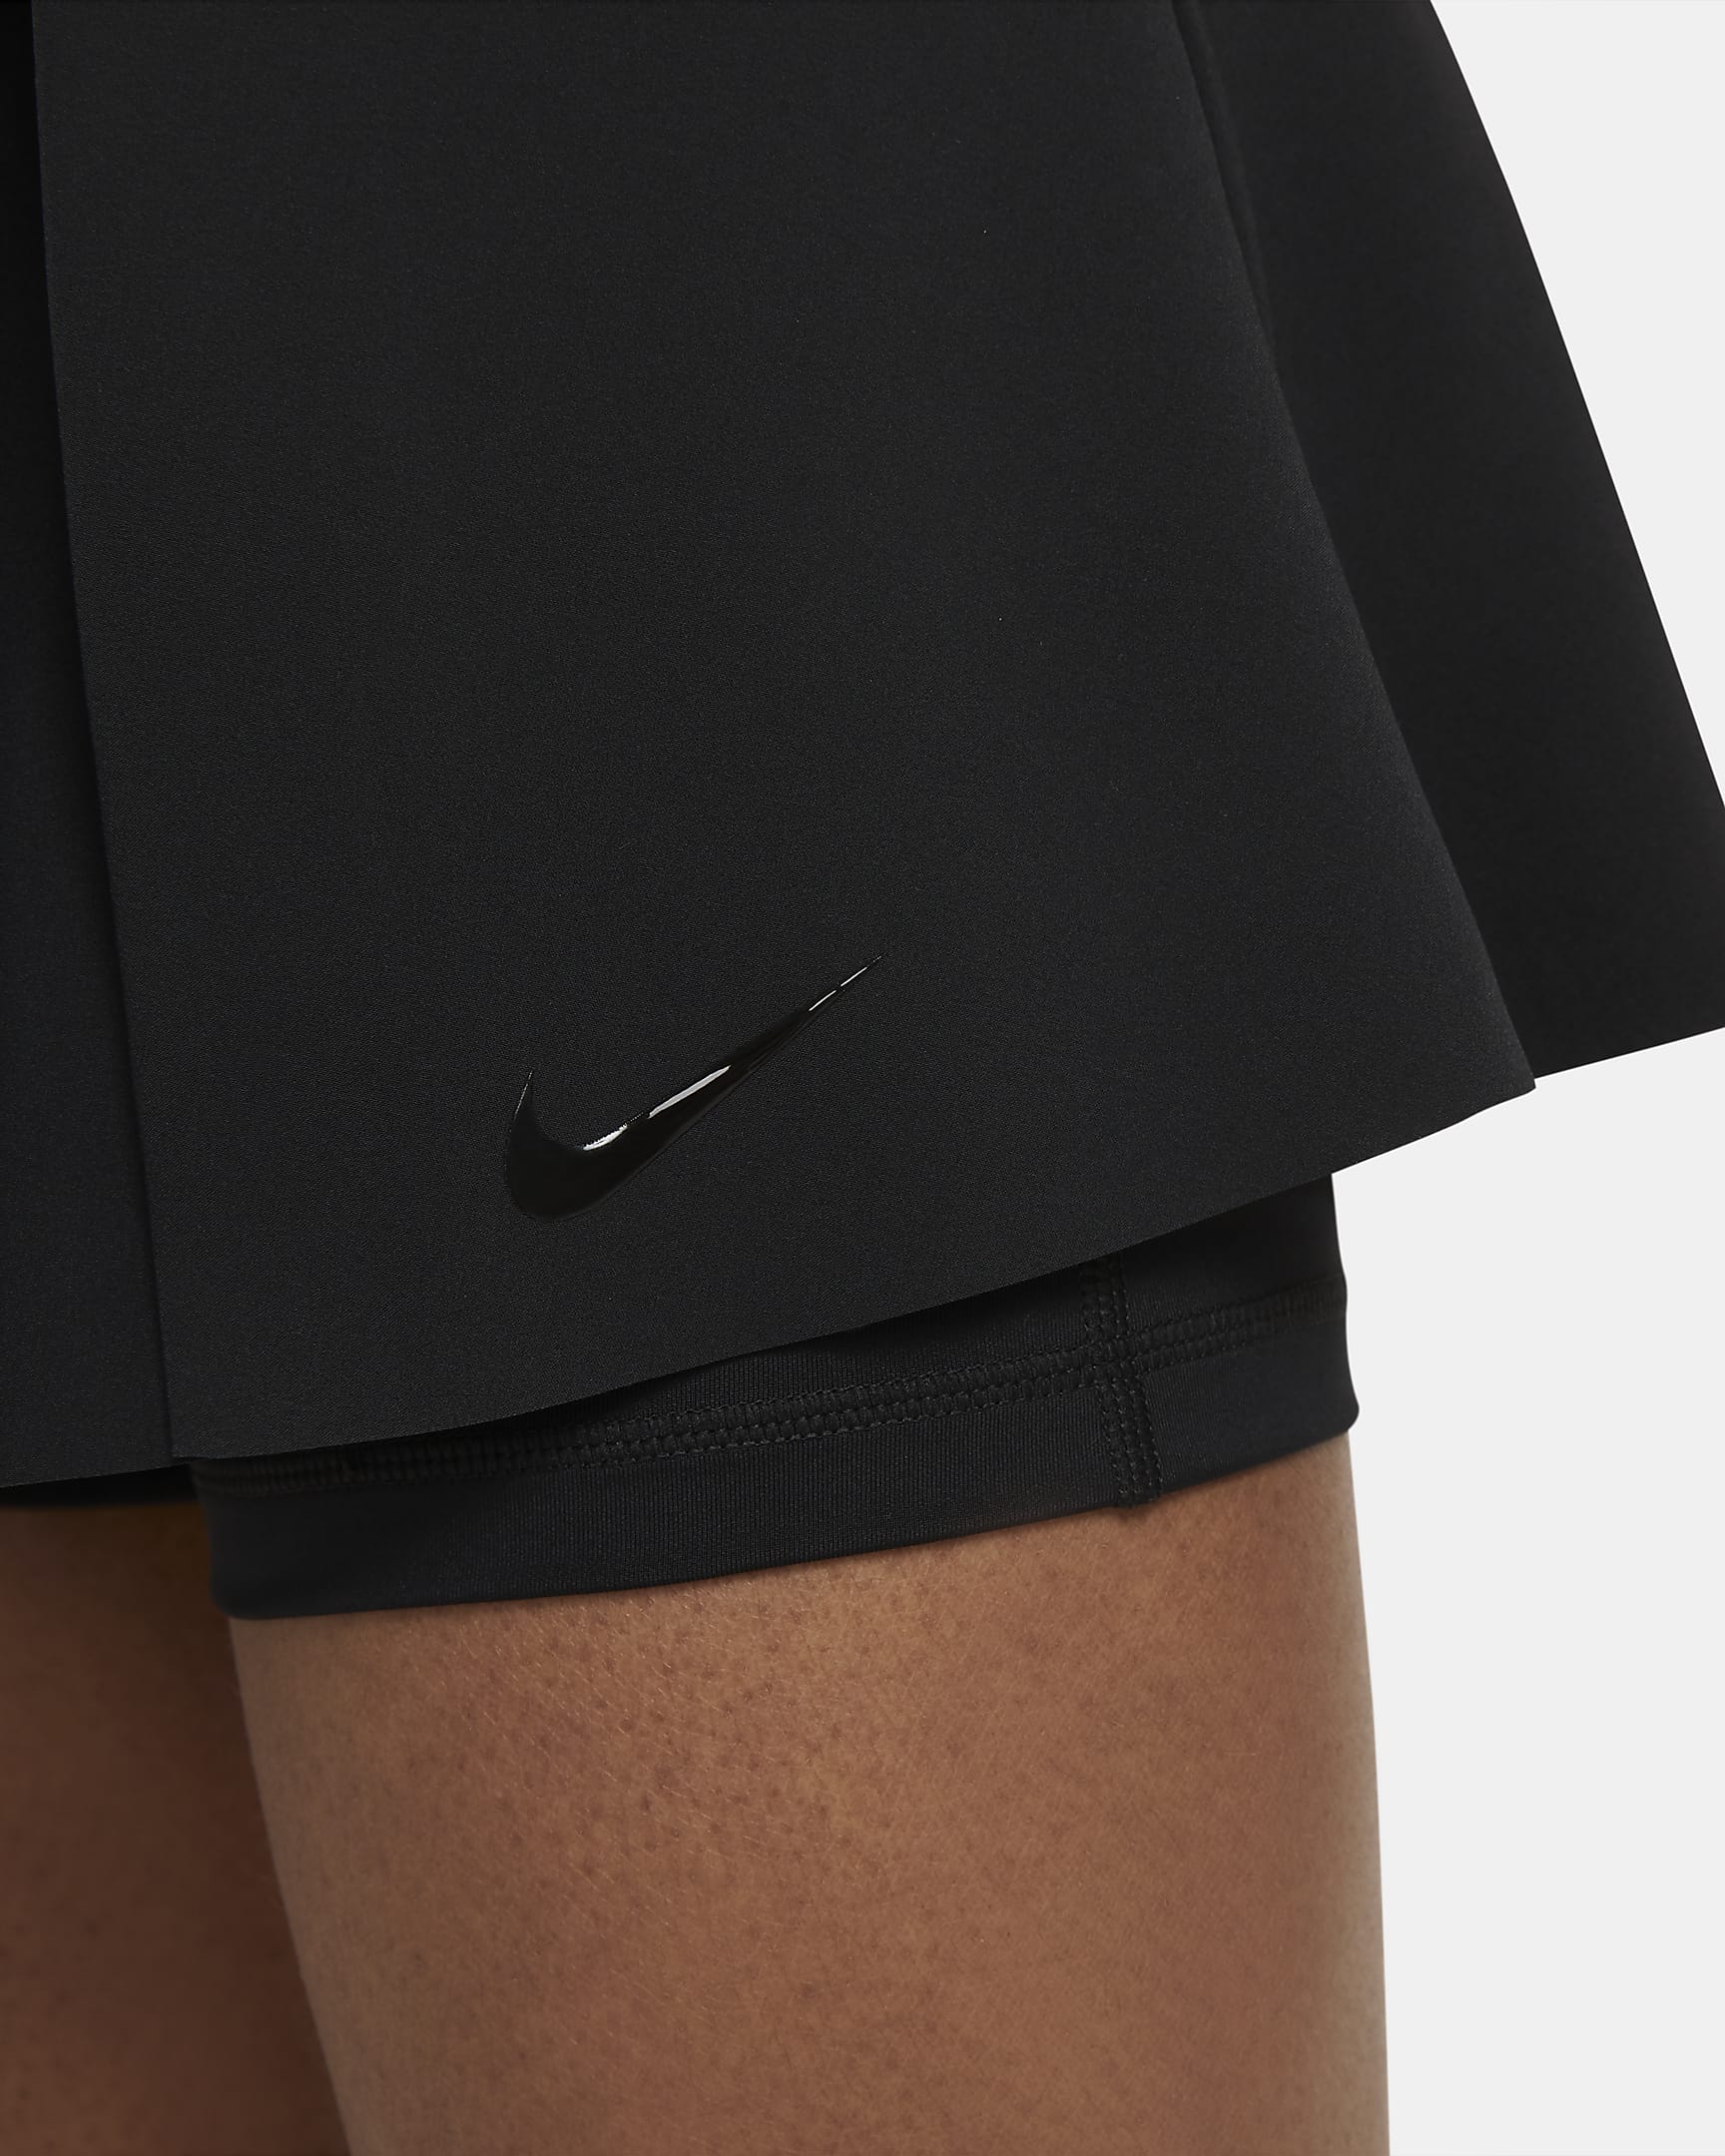 Nike Club Skirt Women's Regular Skirt. Nike.com